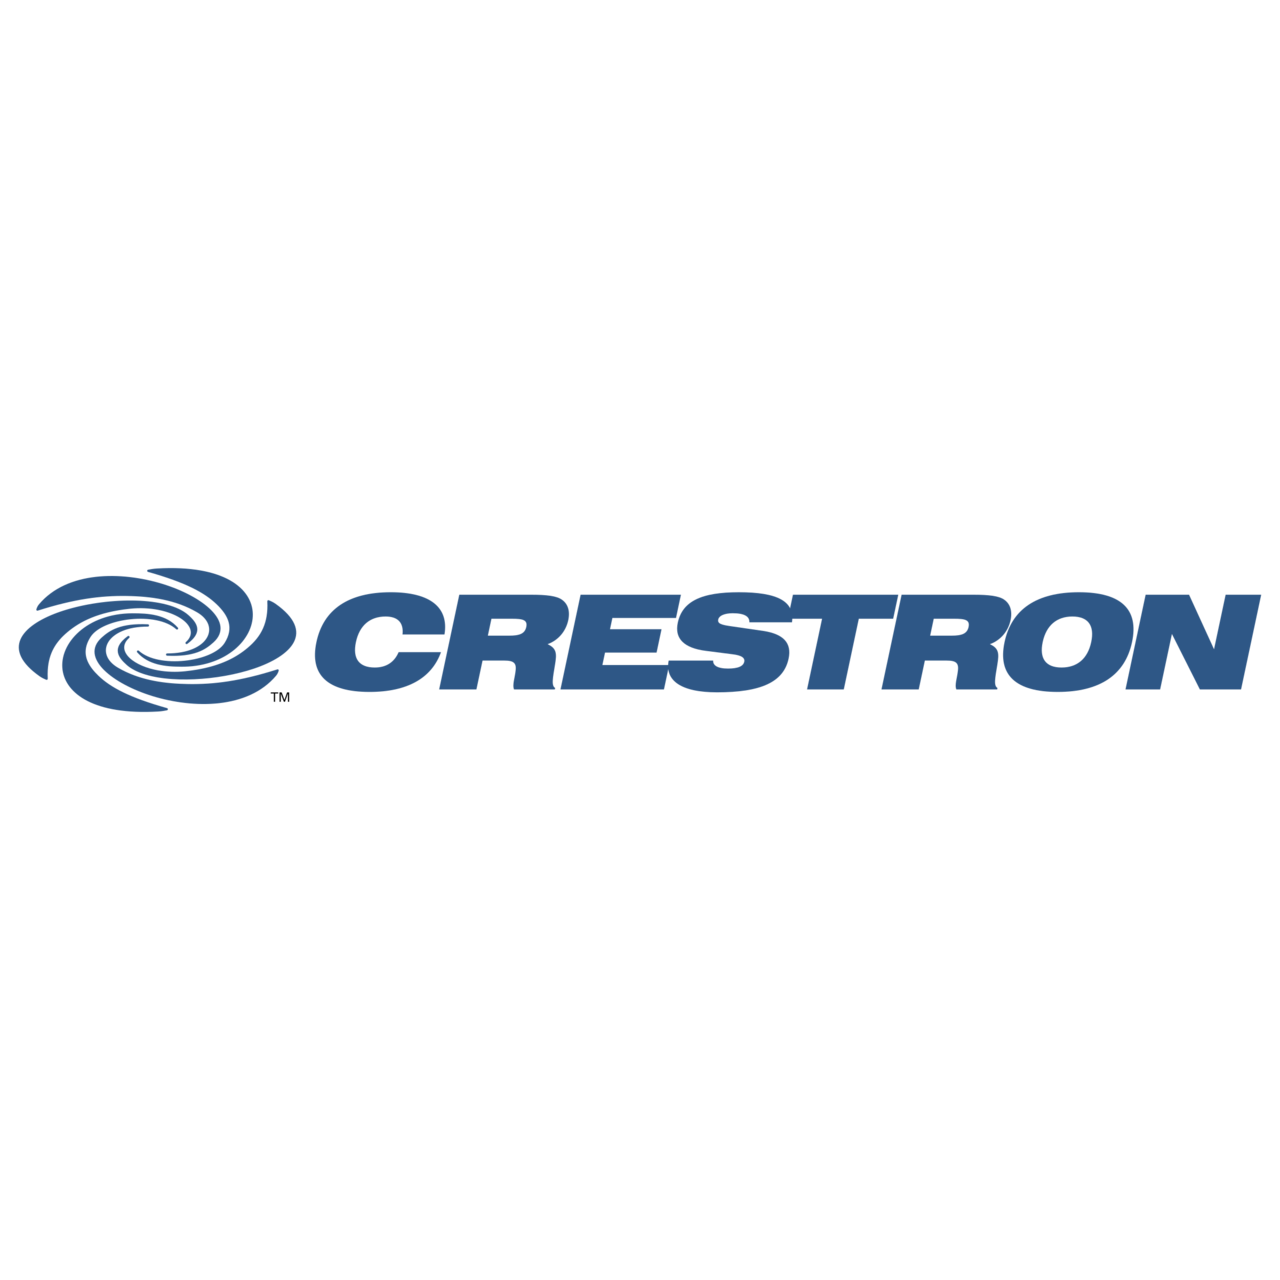 Brand - Crestron